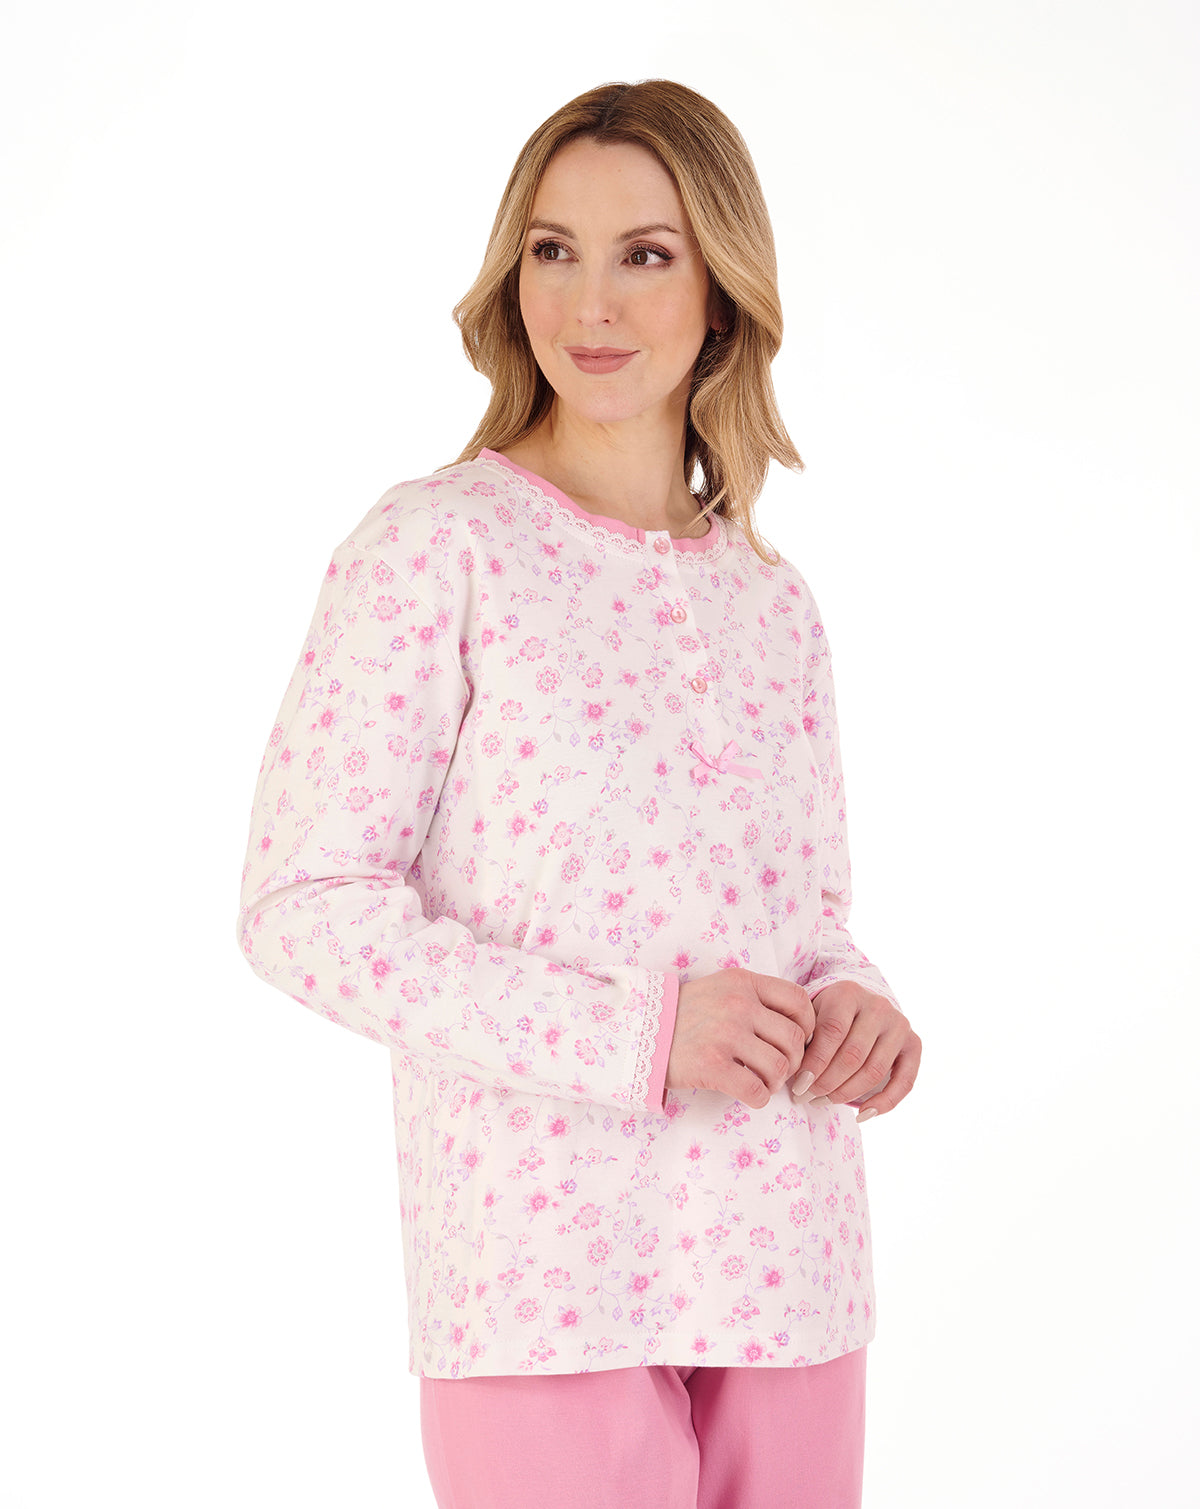 Ladies Slenderella Floral Pyjamas Lace Trim Button Up PJs Set Top & Bottoms